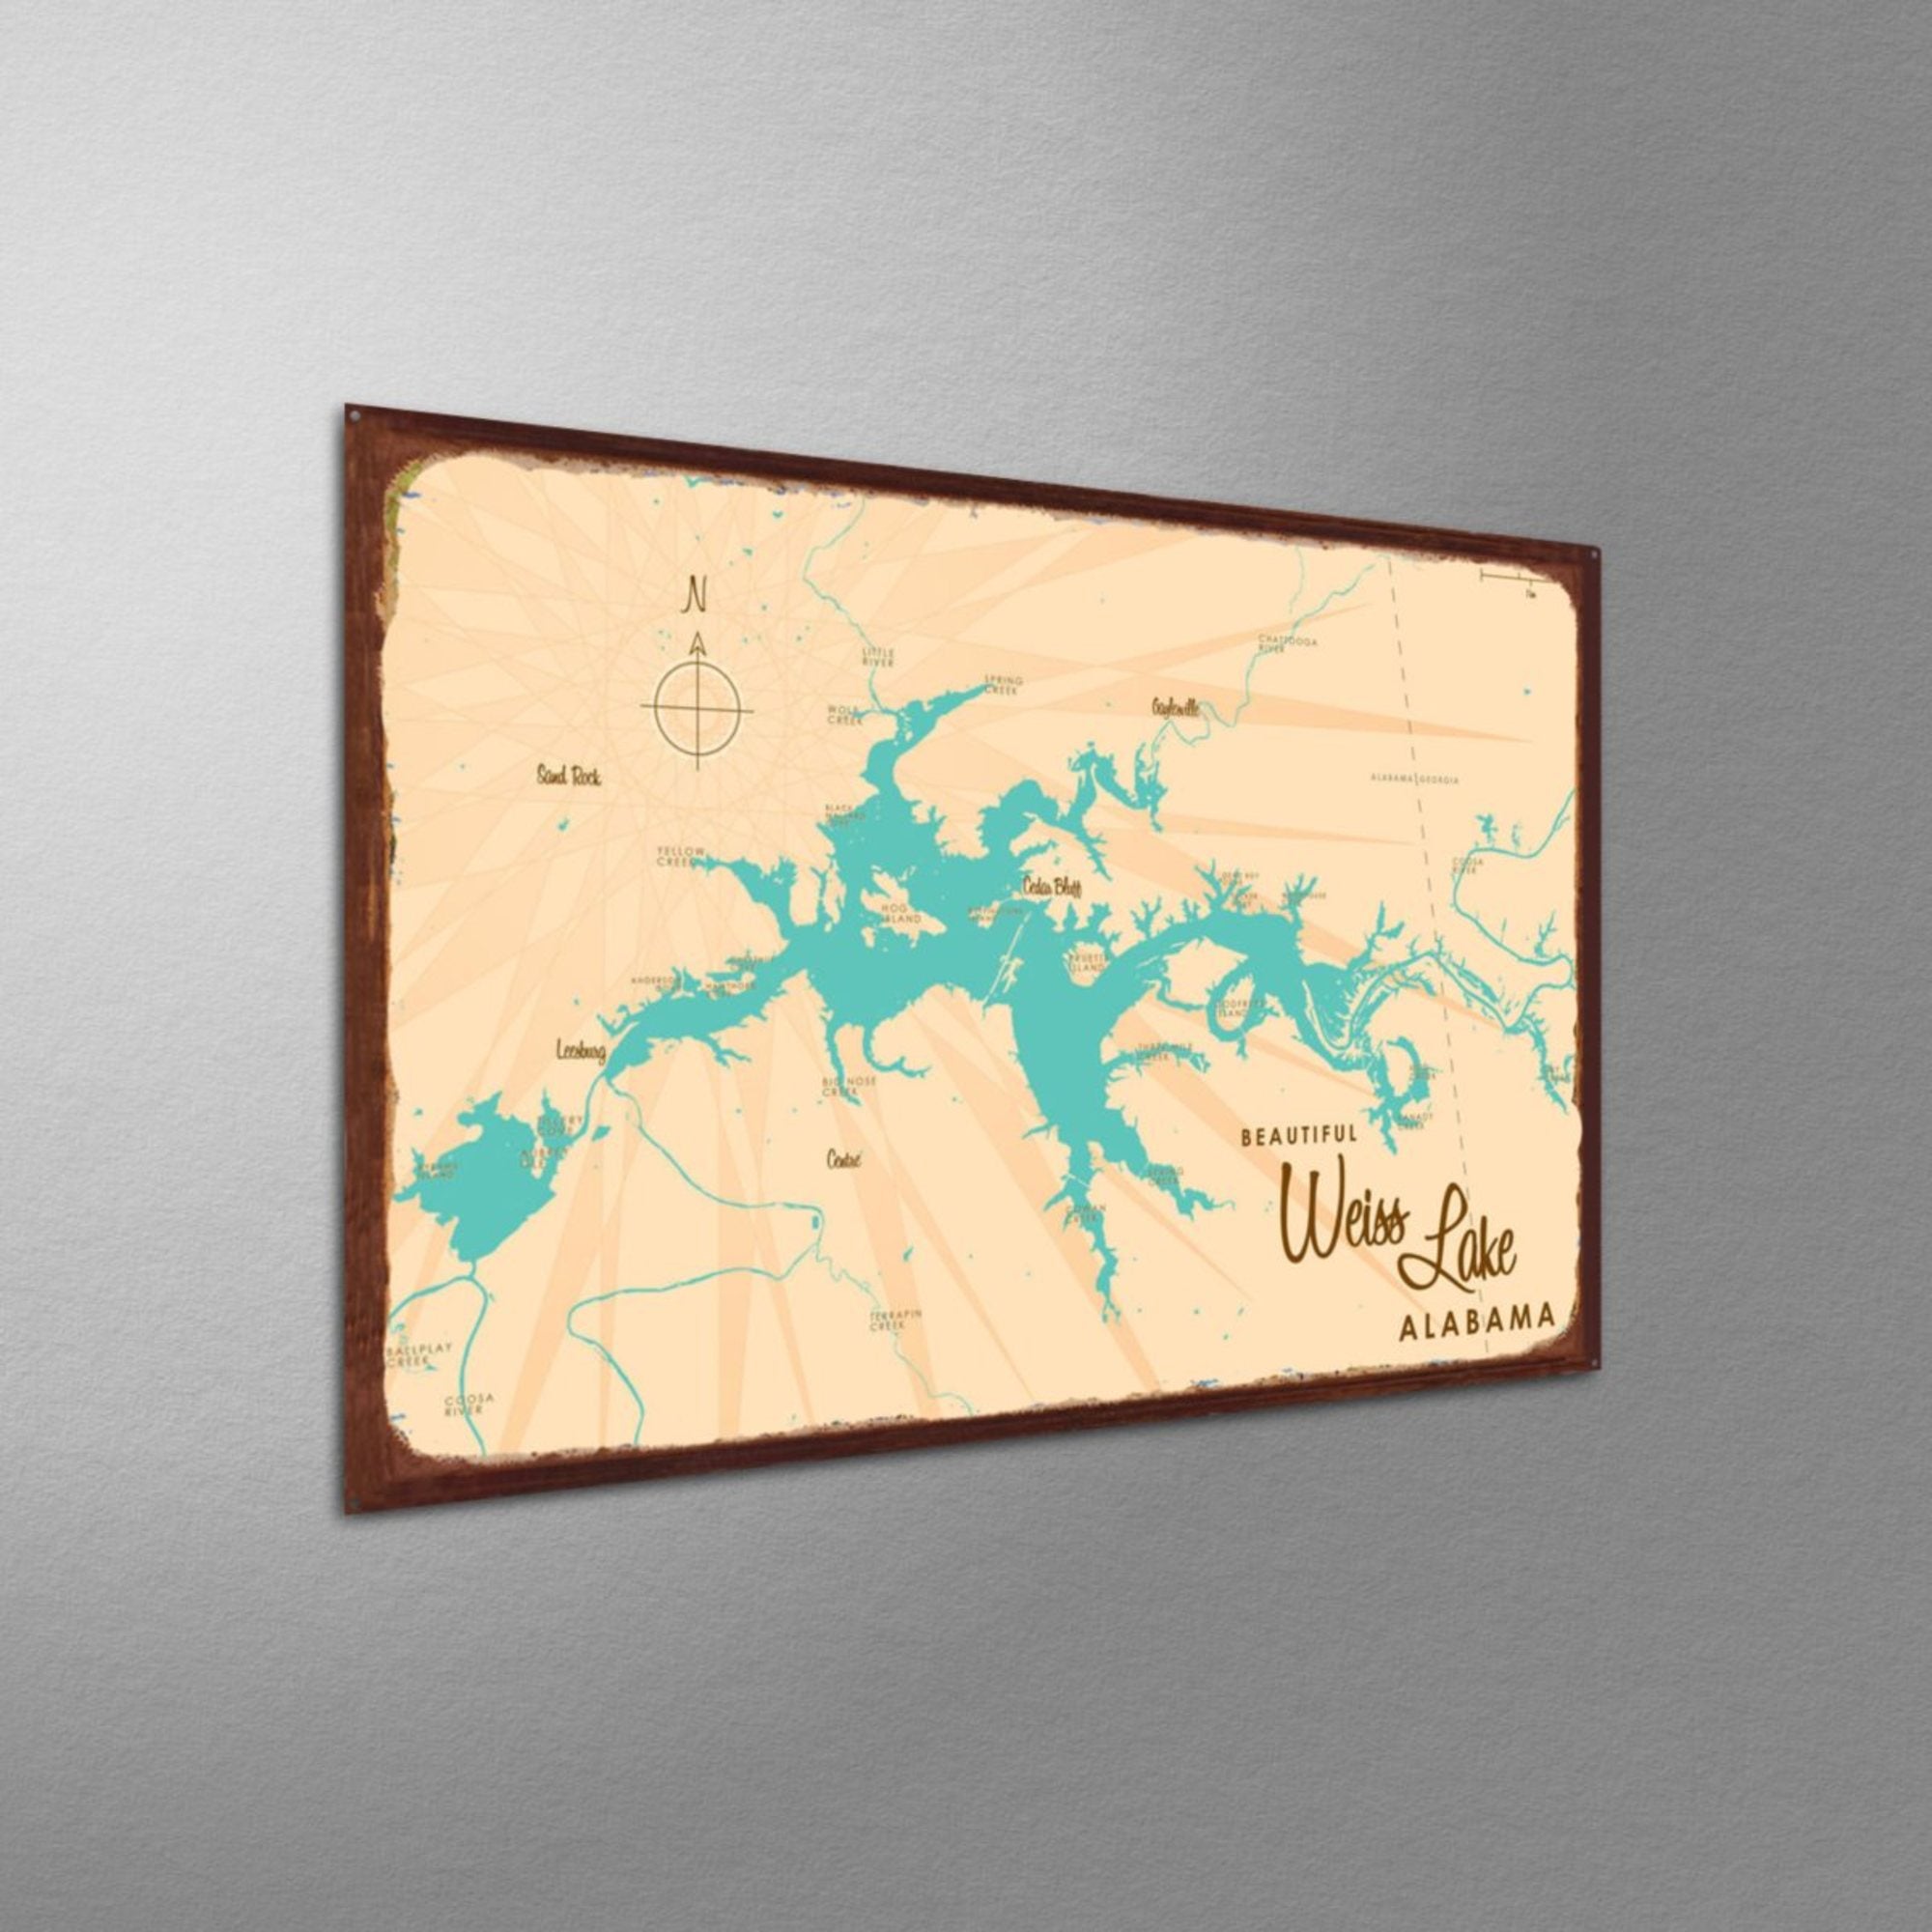 Weiss Lake Alabama, Rustic Metal Sign Map Art